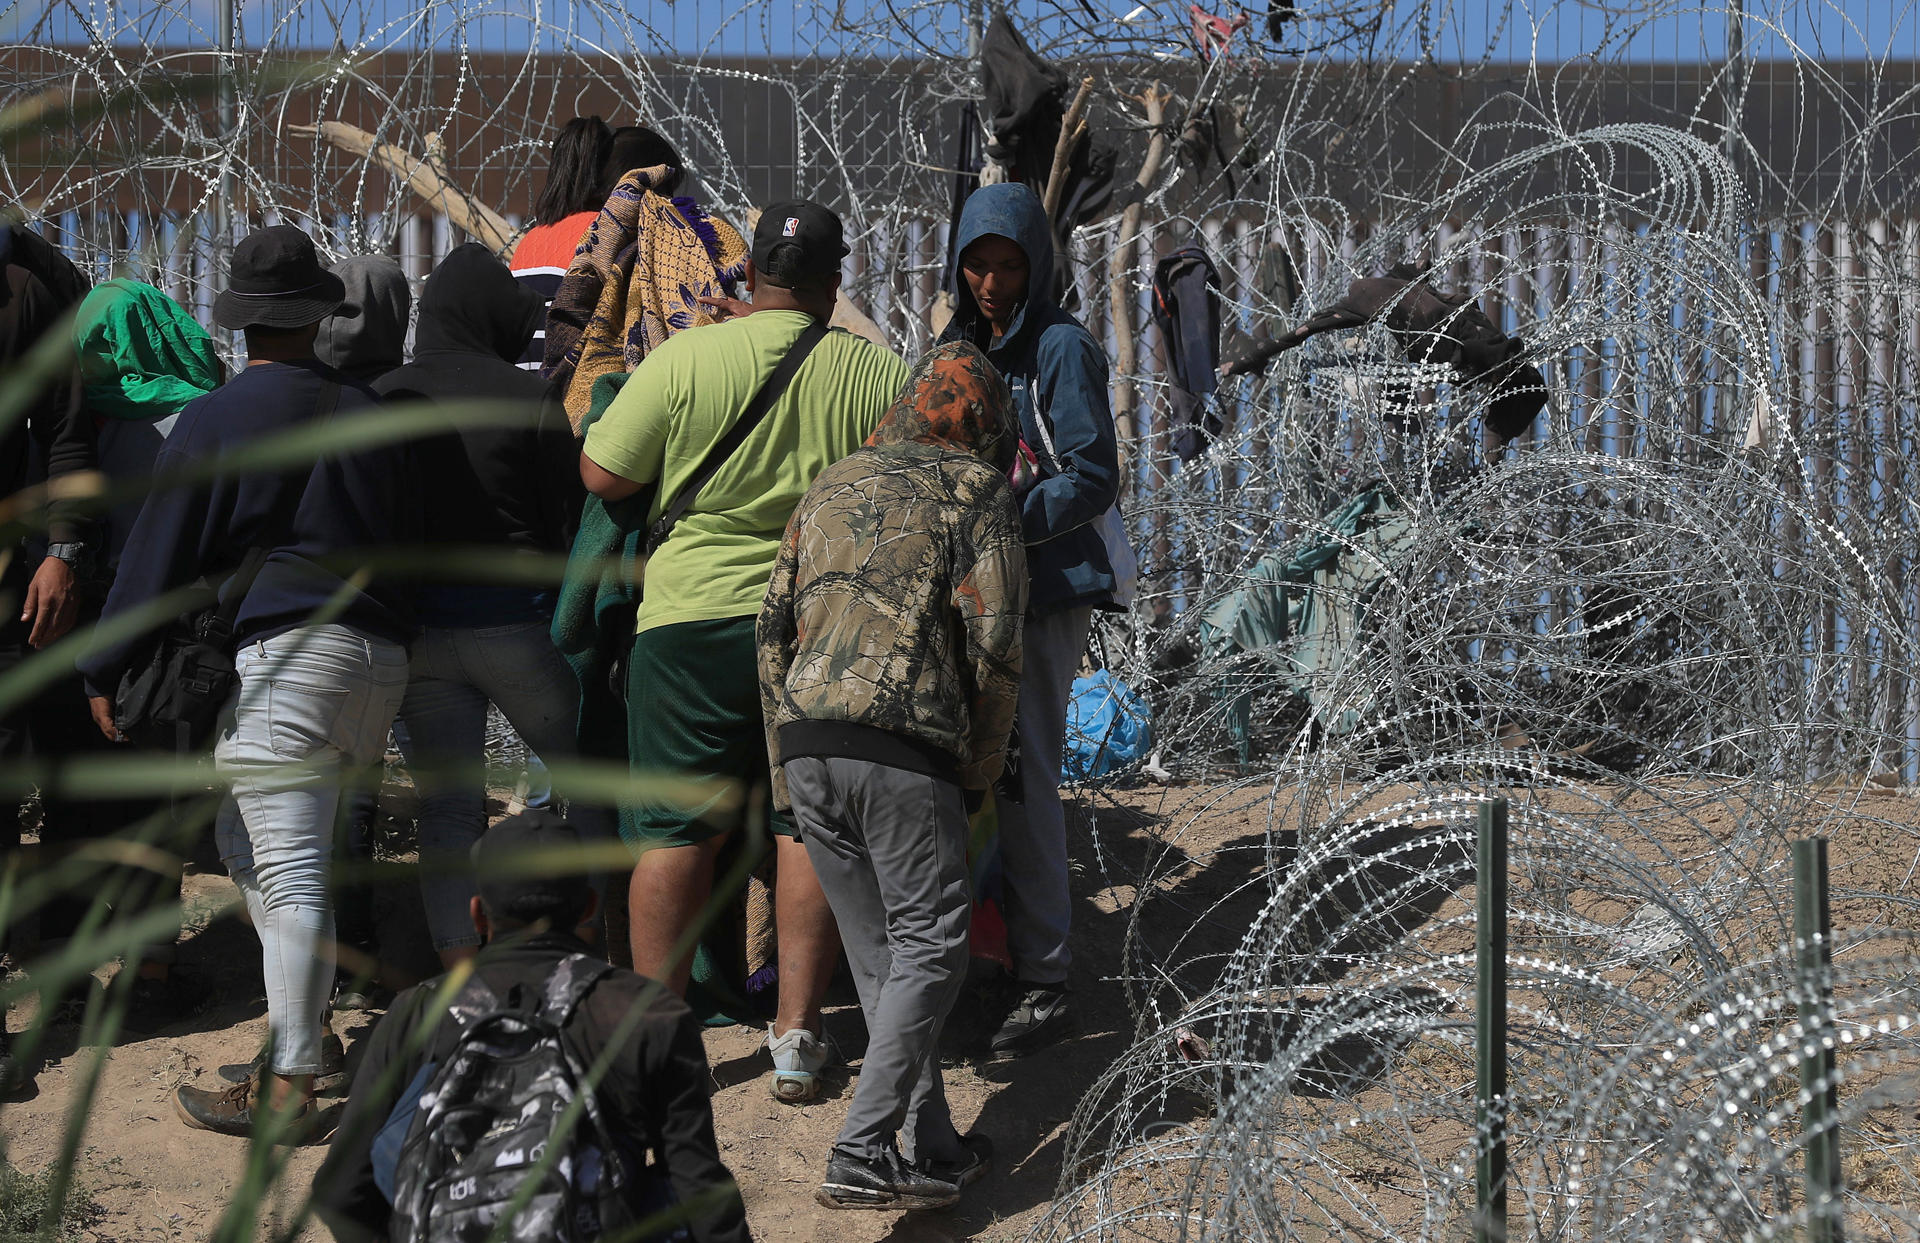 Detenciones de migrantes en la frontera de EEUU se redujeron un 10 % tras restricciones